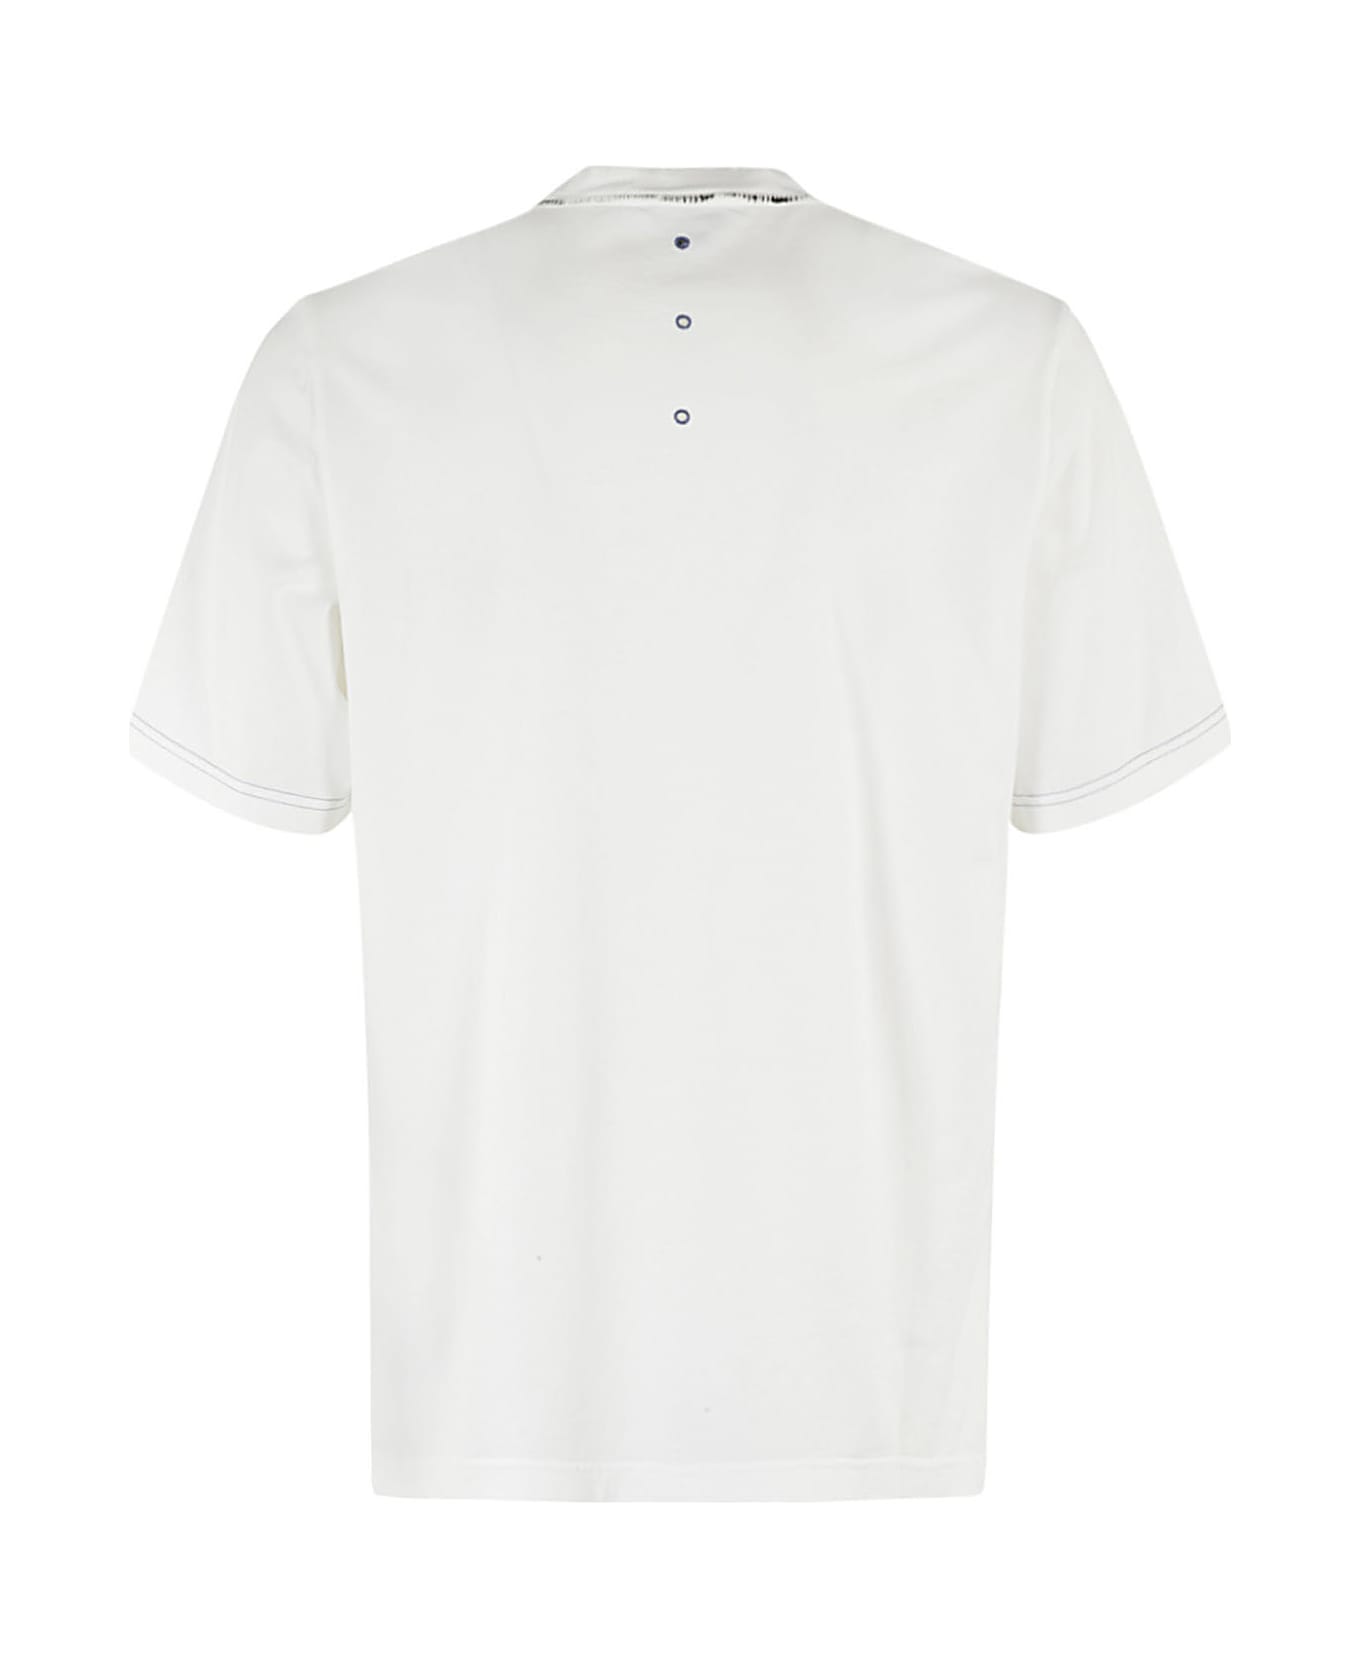 Premiata T Shirt - Bianco